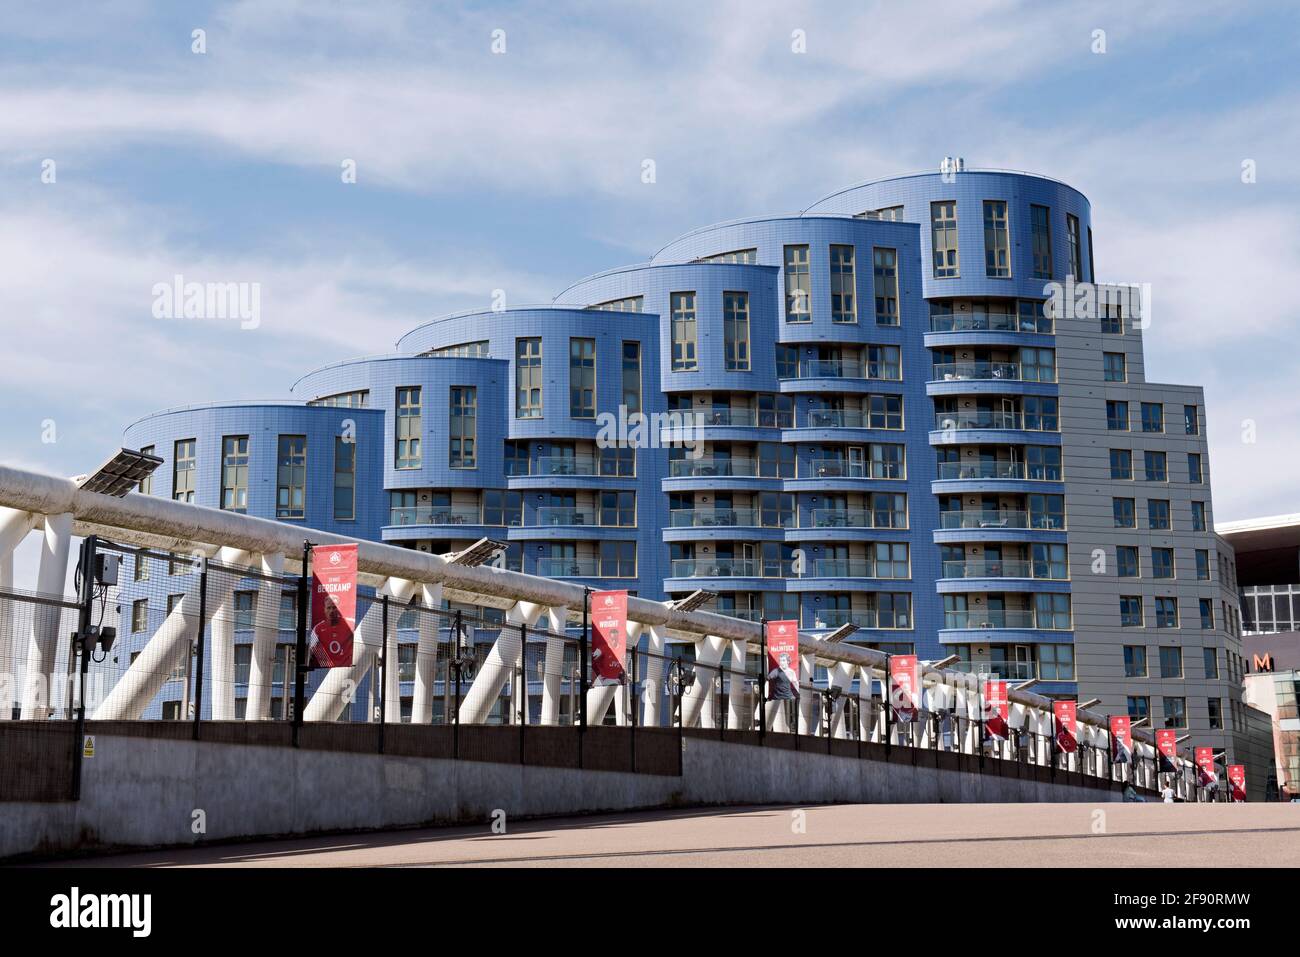 Pisos o apartamentos modernos conocidos como The Blue Drums By Piers Gough visto desde el puente sur que conduce desde Drayton Del Arsenal's Emirates Stadium Foto de stock